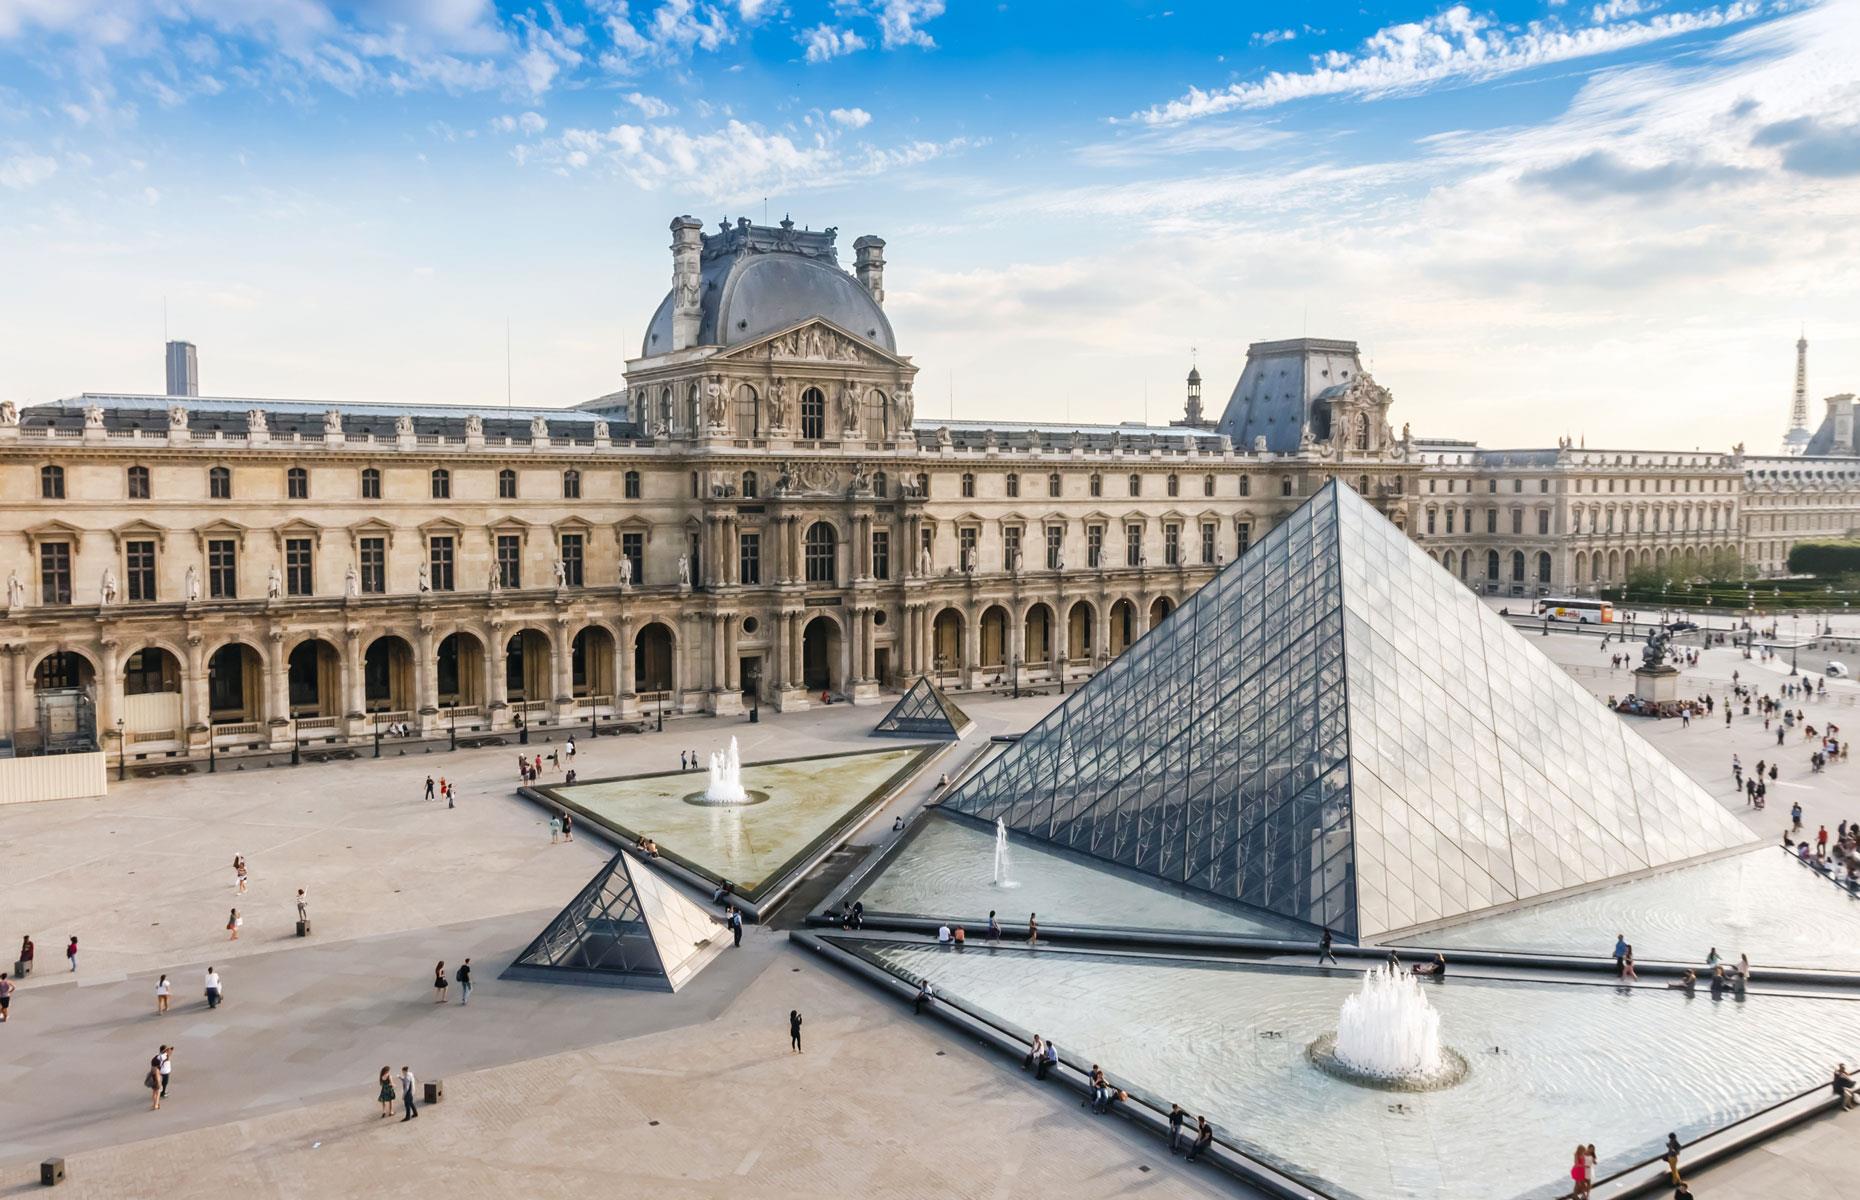 Louvre Palace, France – $45.5 billion+ (£35bn+)